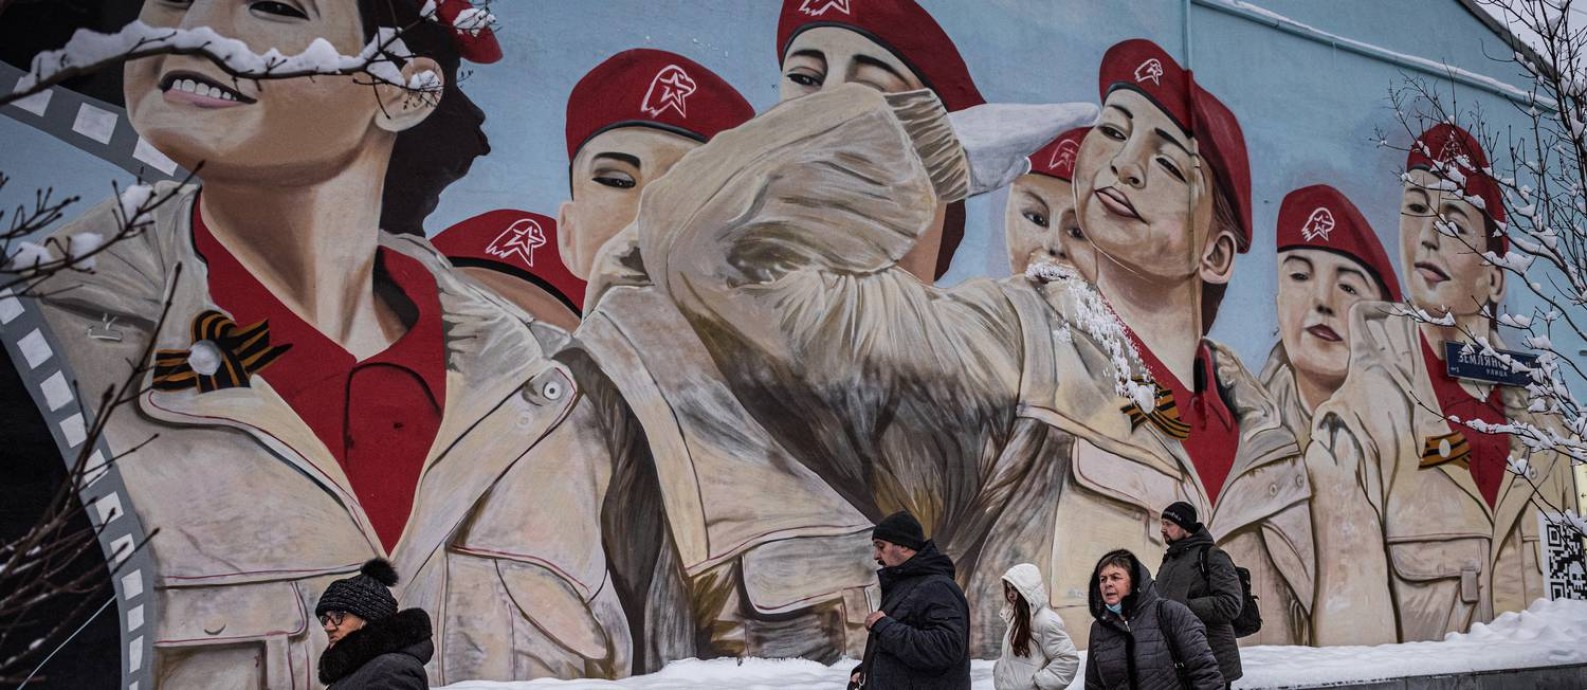 Pessoas passam diante de mural em homenagem à Yunarmiya, o Exército da Juventude, organização ligada ao Ministério da Defesa, em Moscou Foto: SERGEY PONOMAREV / NYT